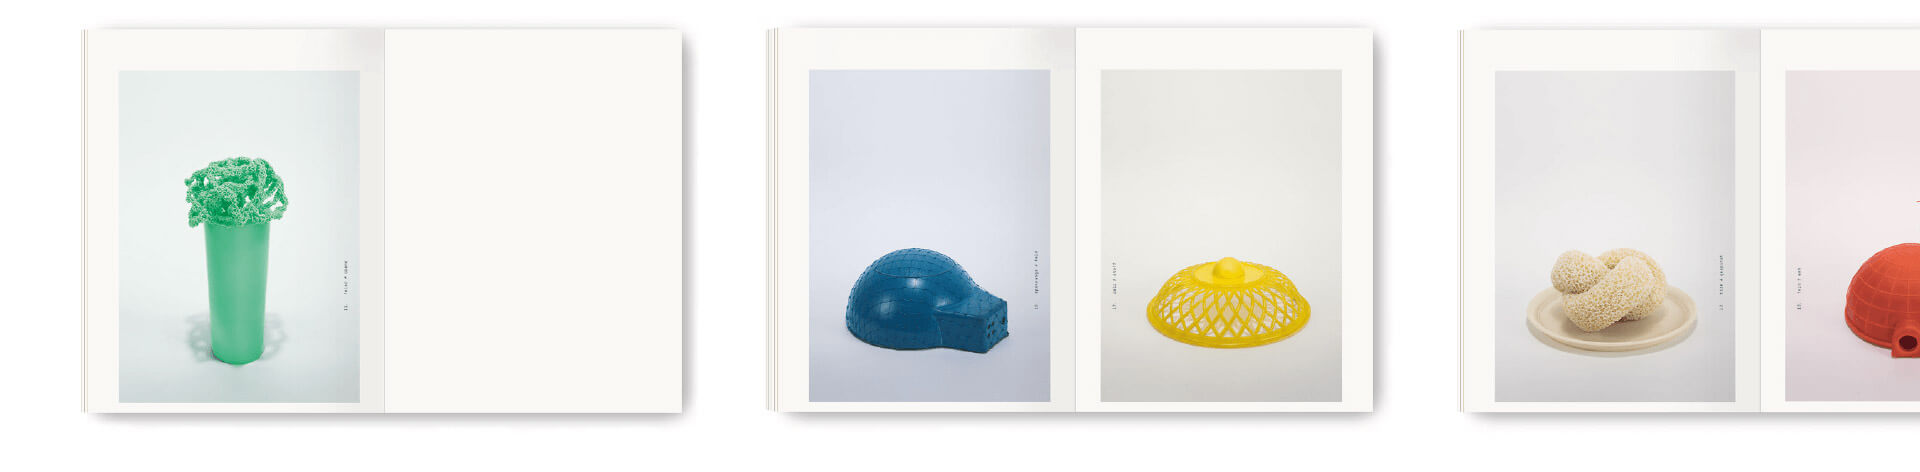 Gabrielle Voisard Kunstprojekt Mauerblümchen Doppelseiten aus dem Buch mit Fotos von einem grünen, blauen, gelben,cremfarbenen und roten Objekt